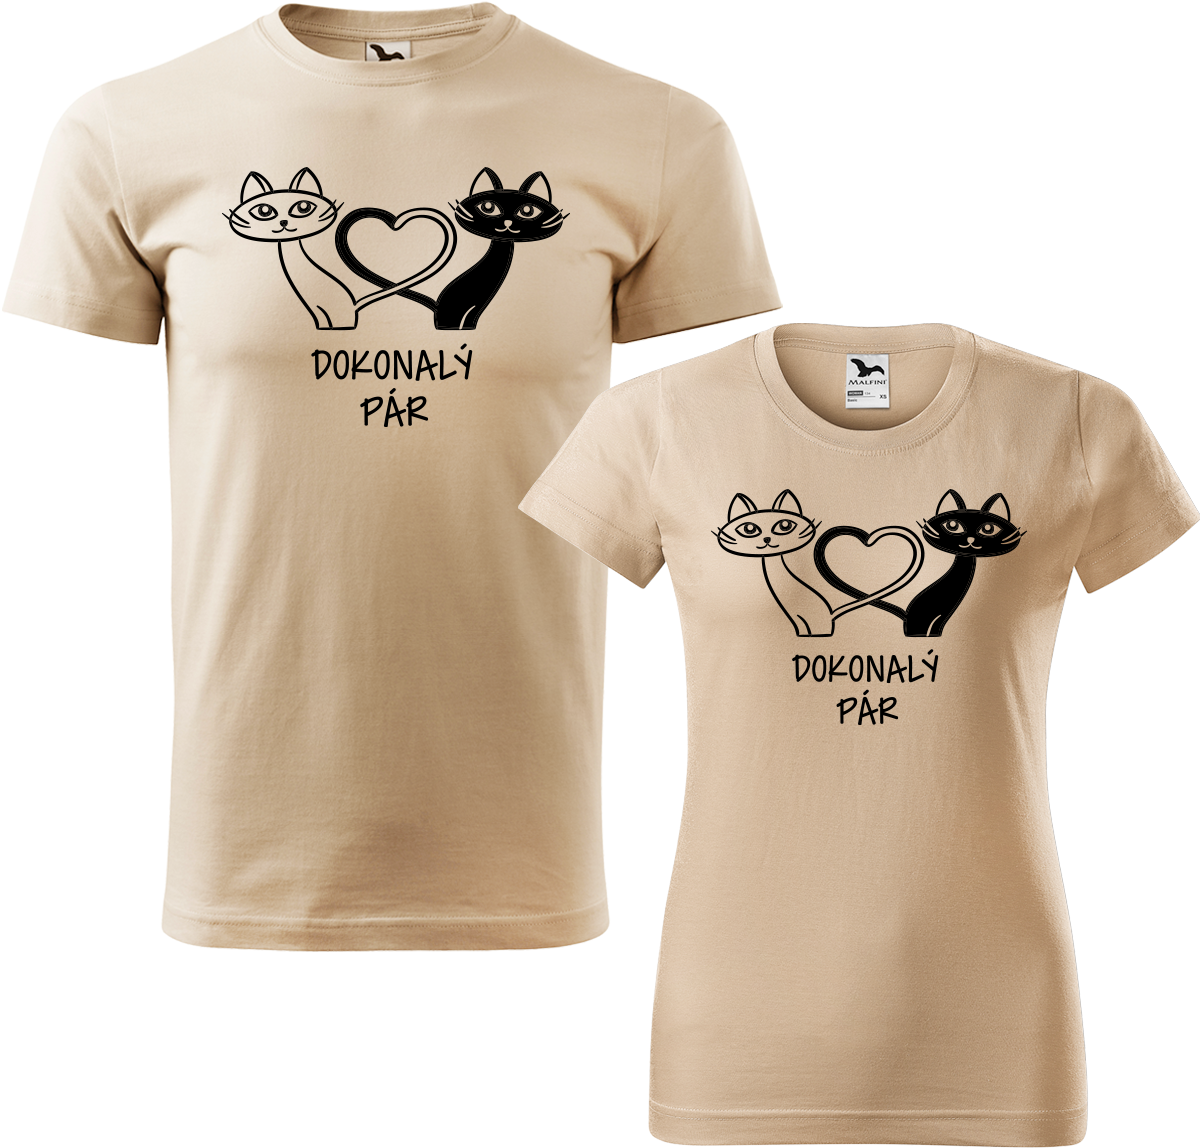 Trička pro páry - Dokonalý pár Barva: Písková (08), Velikost dámské tričko: S, Velikost pánské tričko: XL